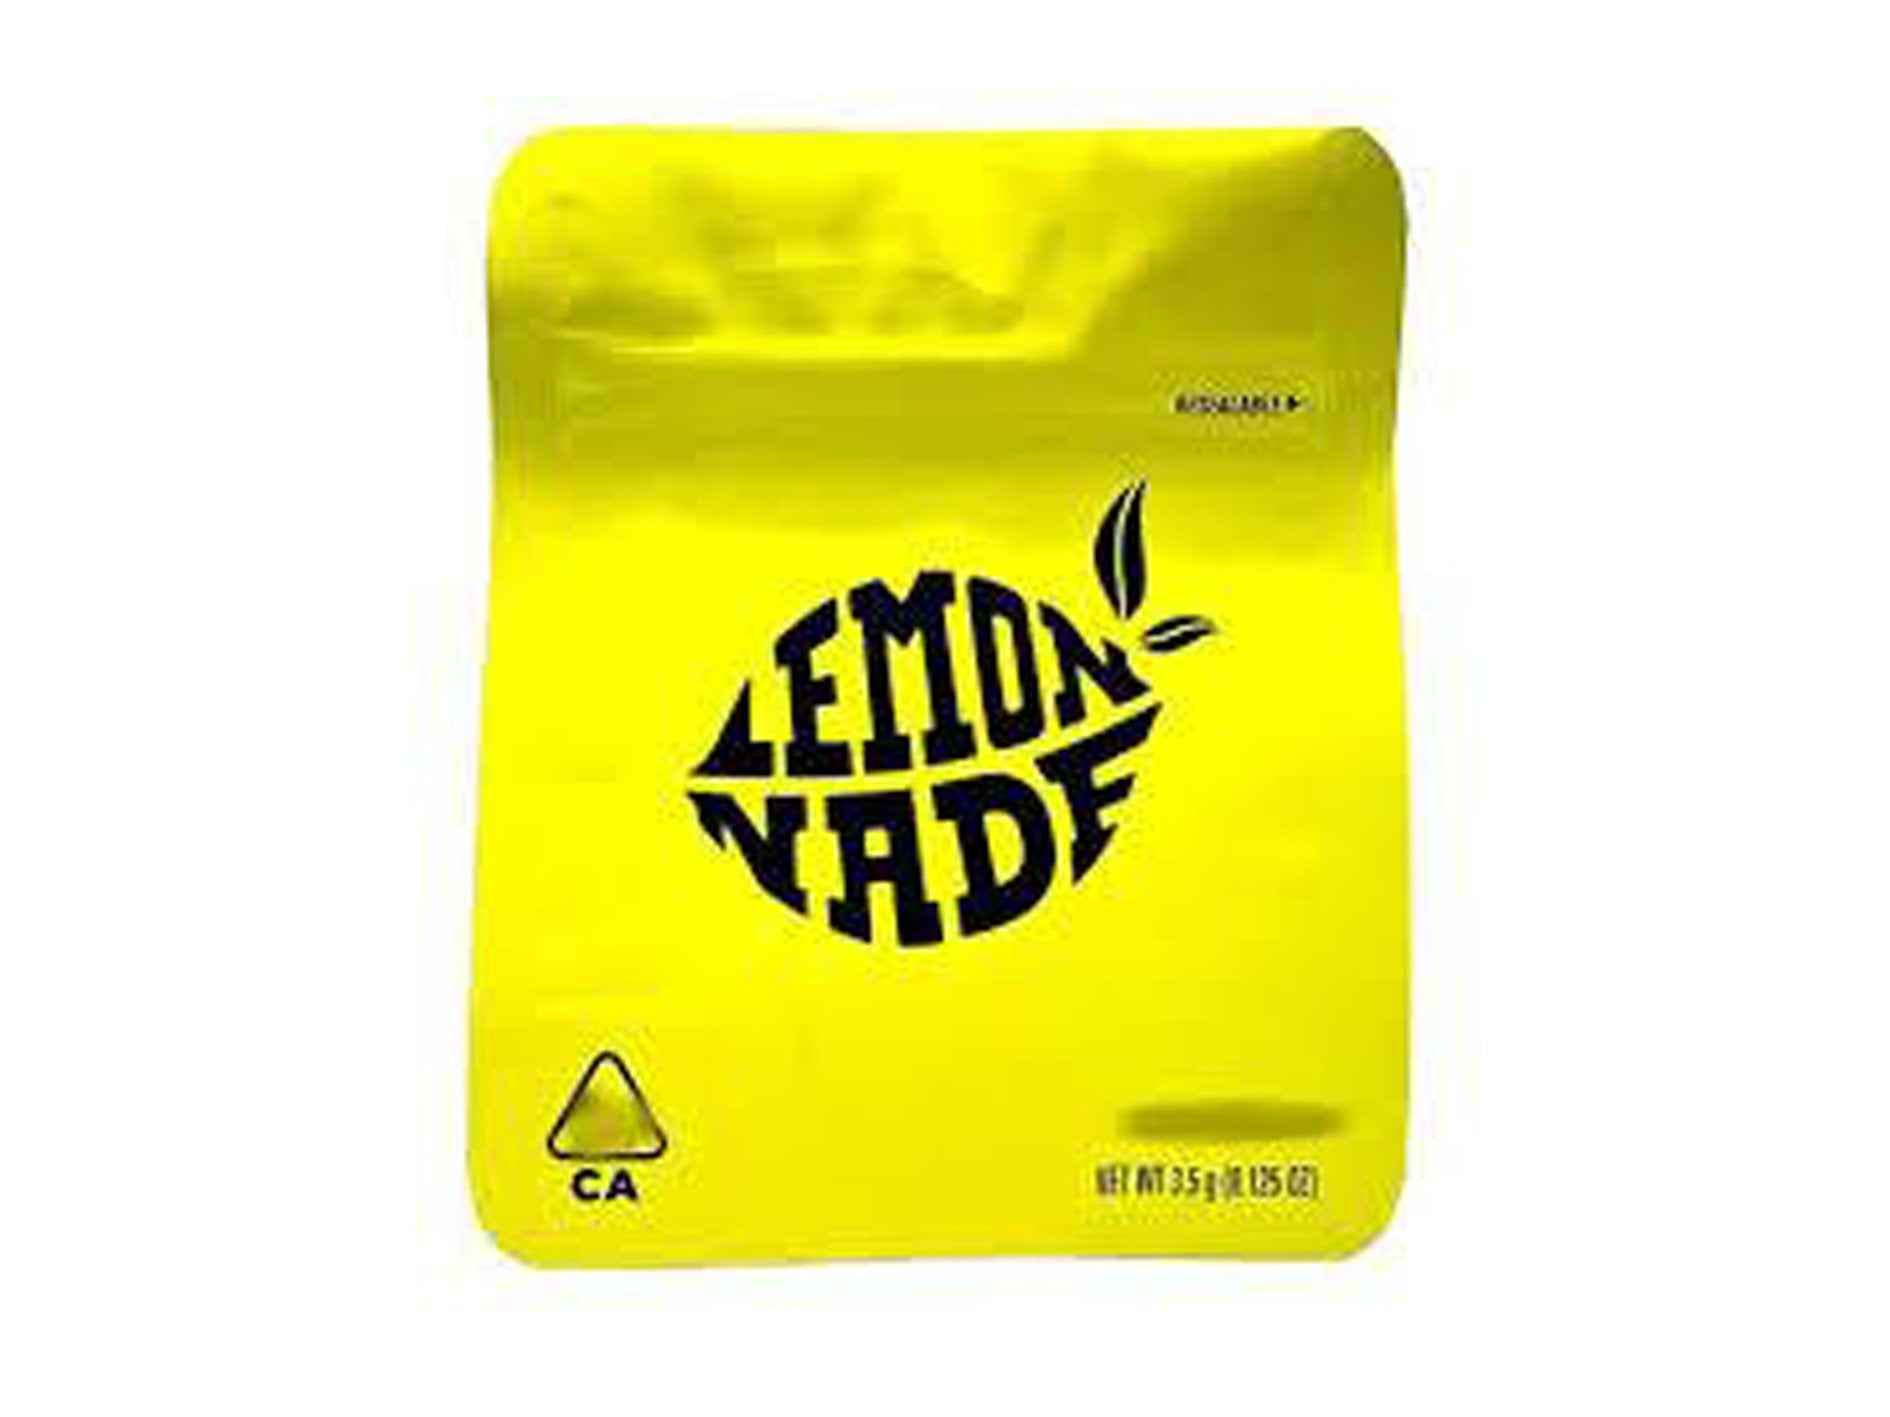 COOKIES & Lemonade MYLAR Smelly Proof Bags - Lemonade 50 Pack - VIR Wholesale